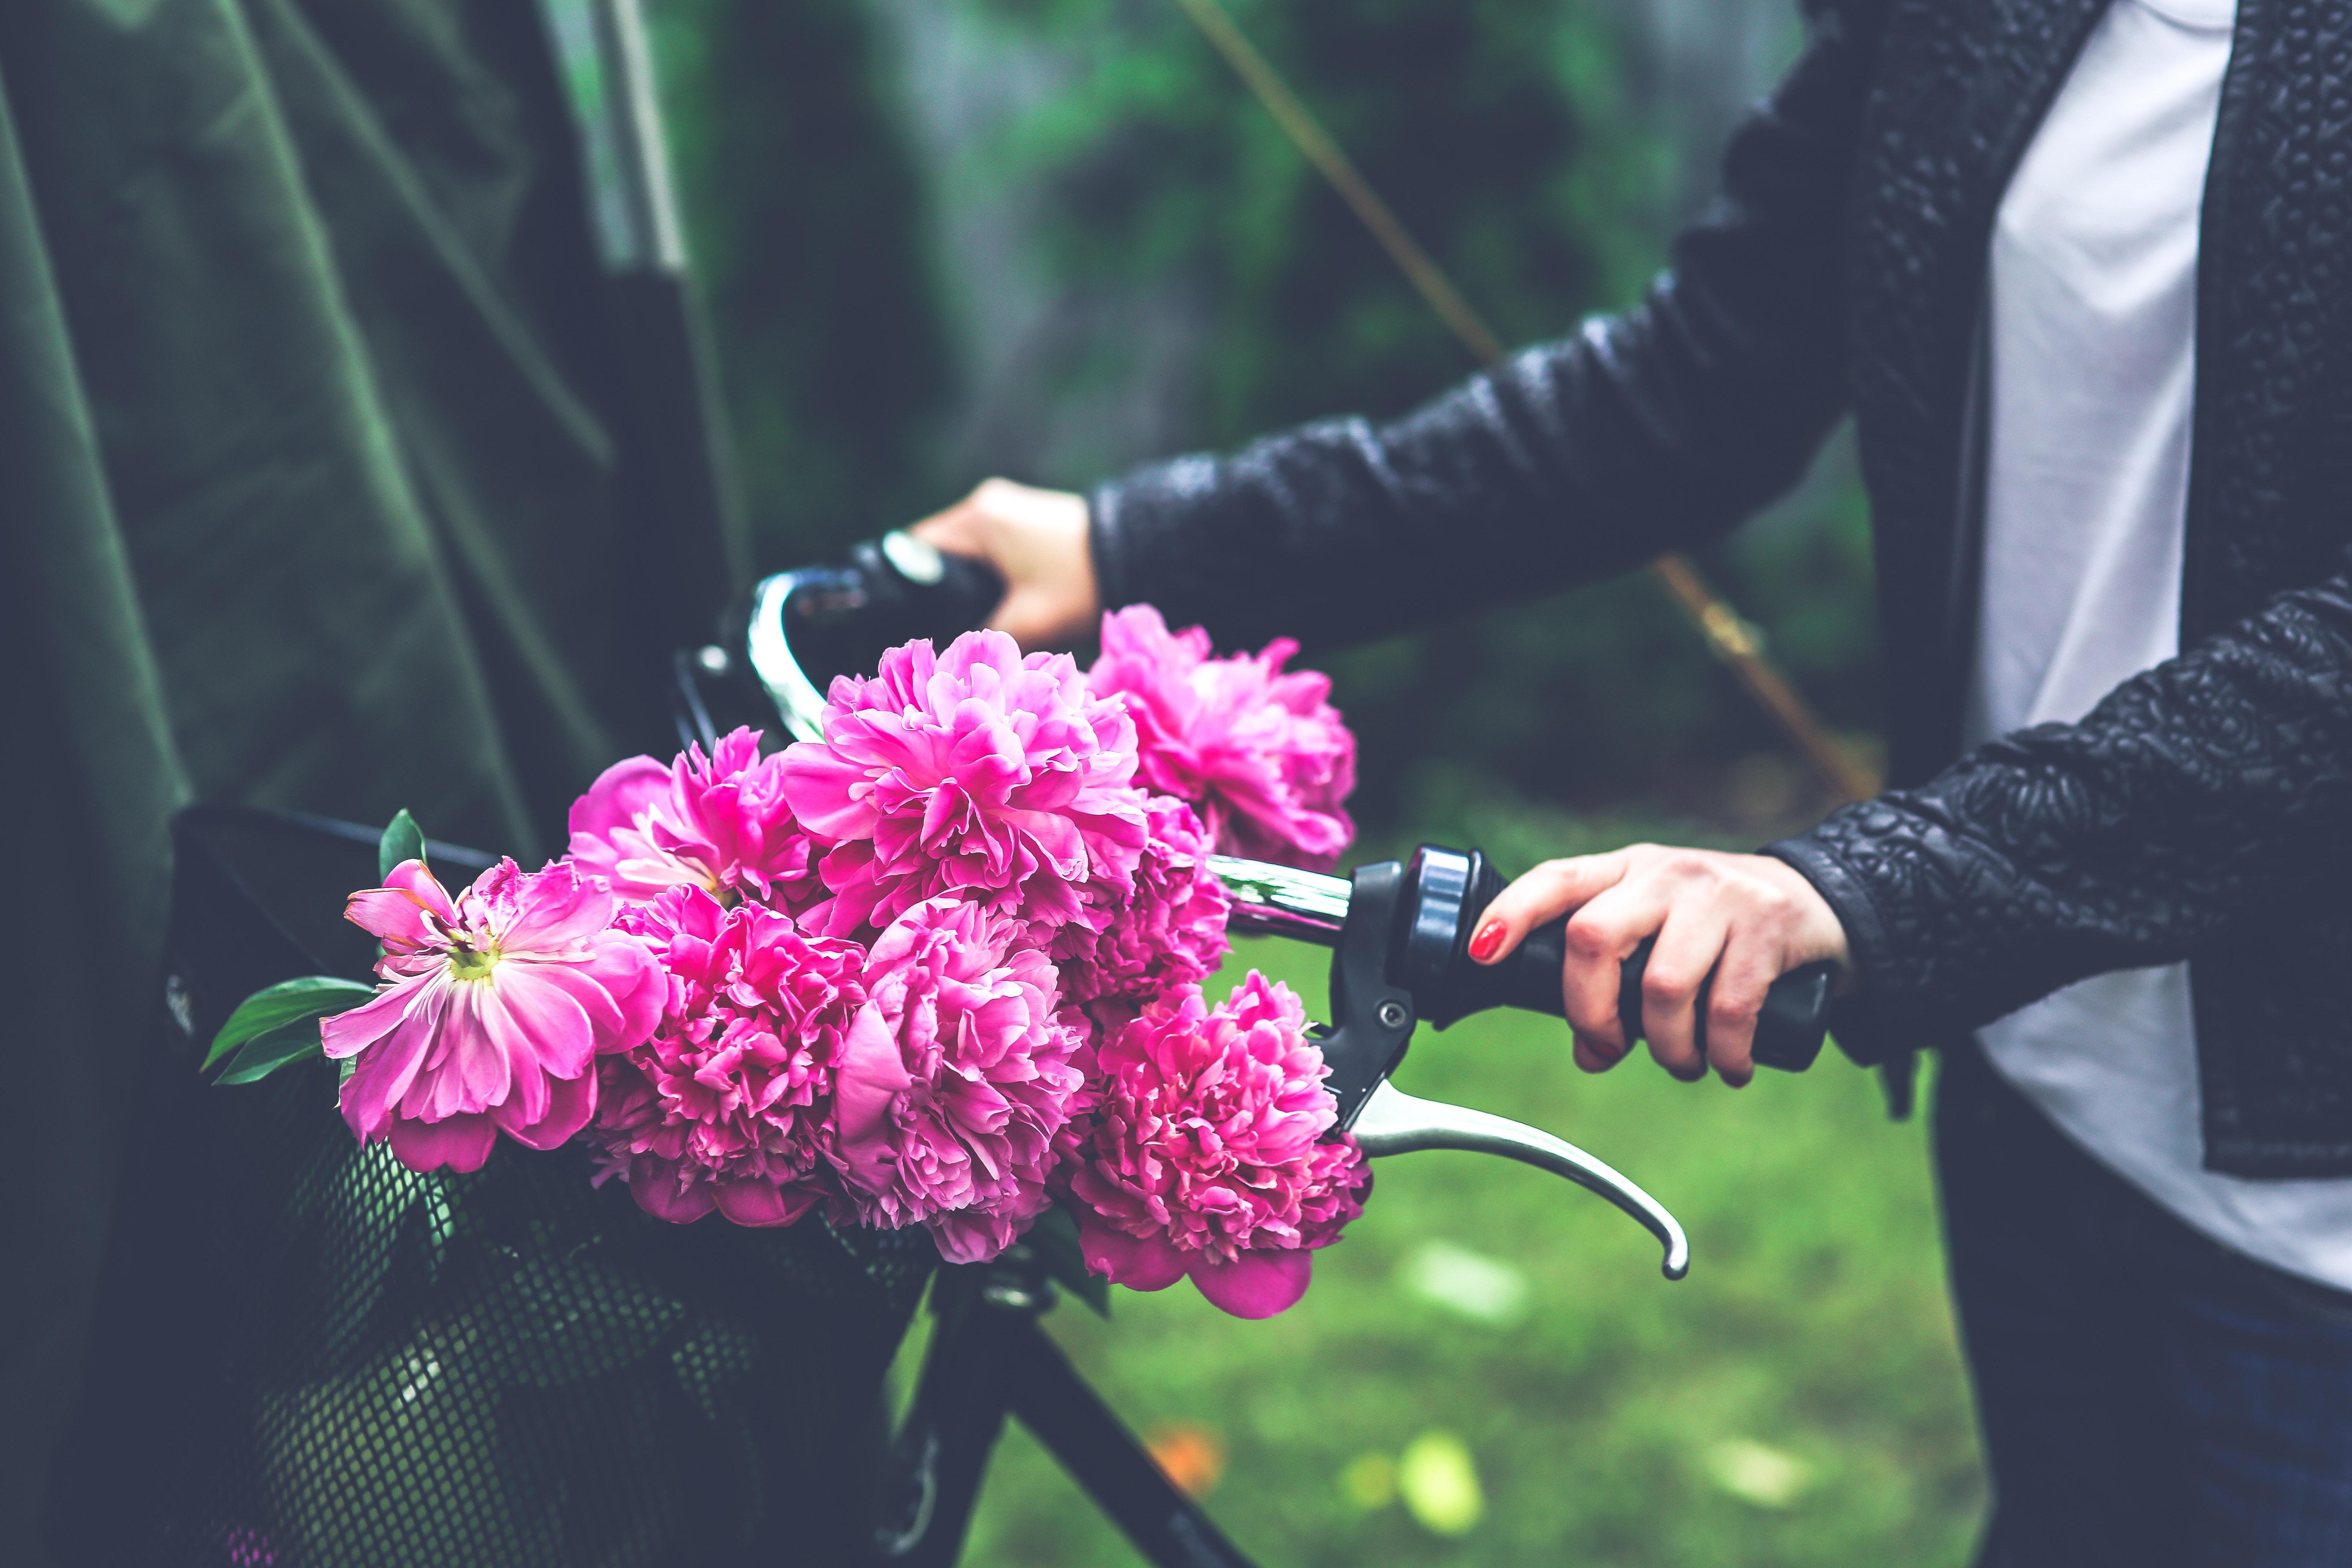 Bike with flower basket · Free